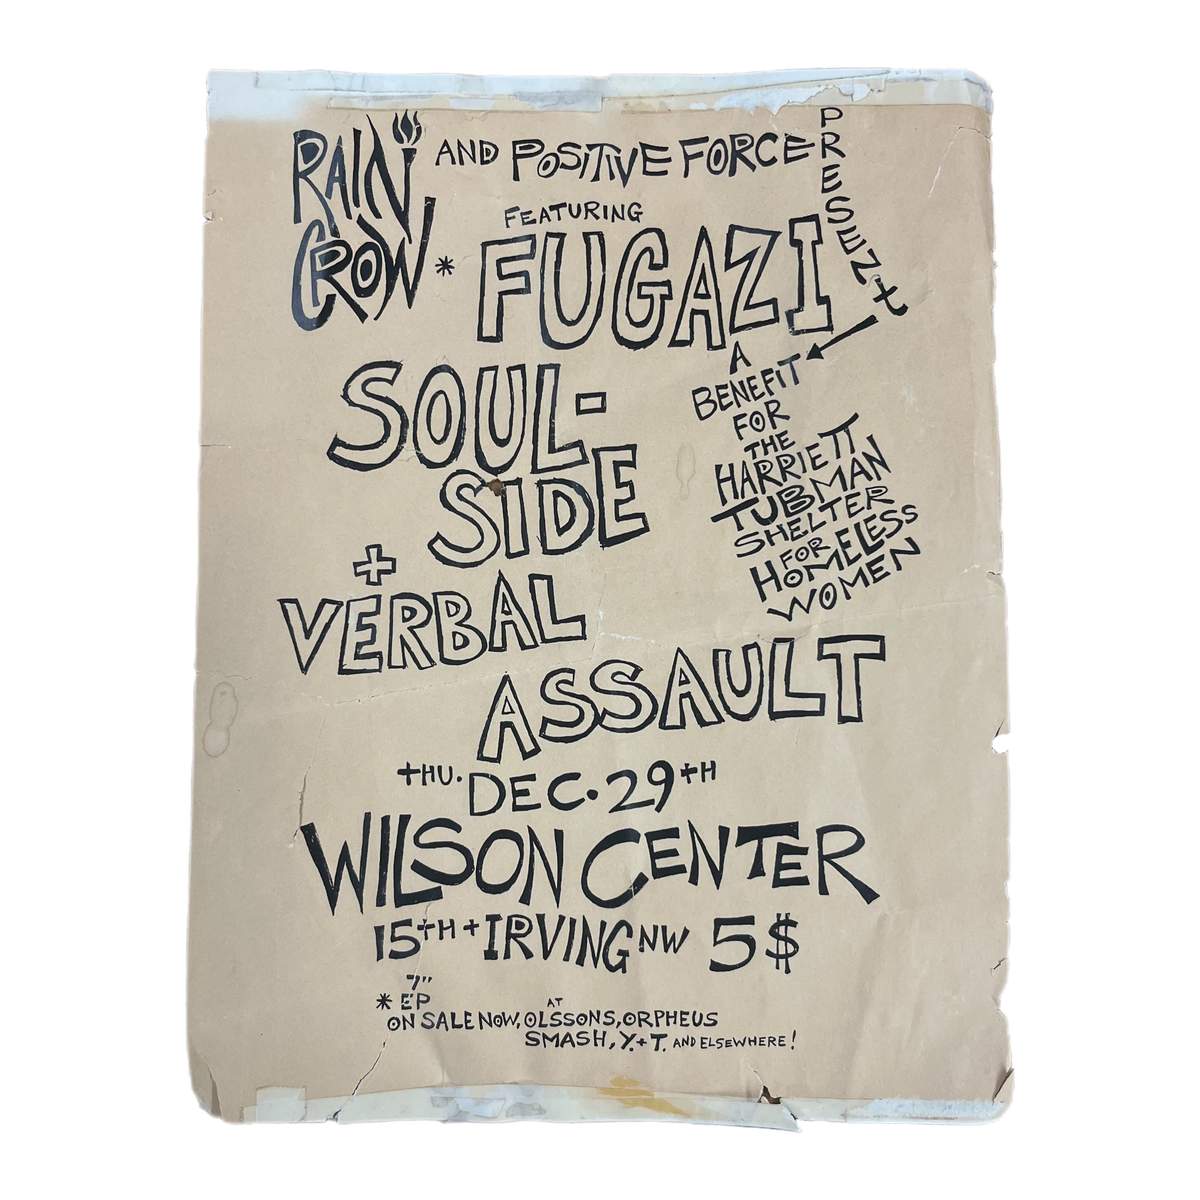 Vintage Rain Crow And Positive Force Present &quot;Fugazi Soul Side Verbal Assault&quot; Wilson Center DC Show Flyer